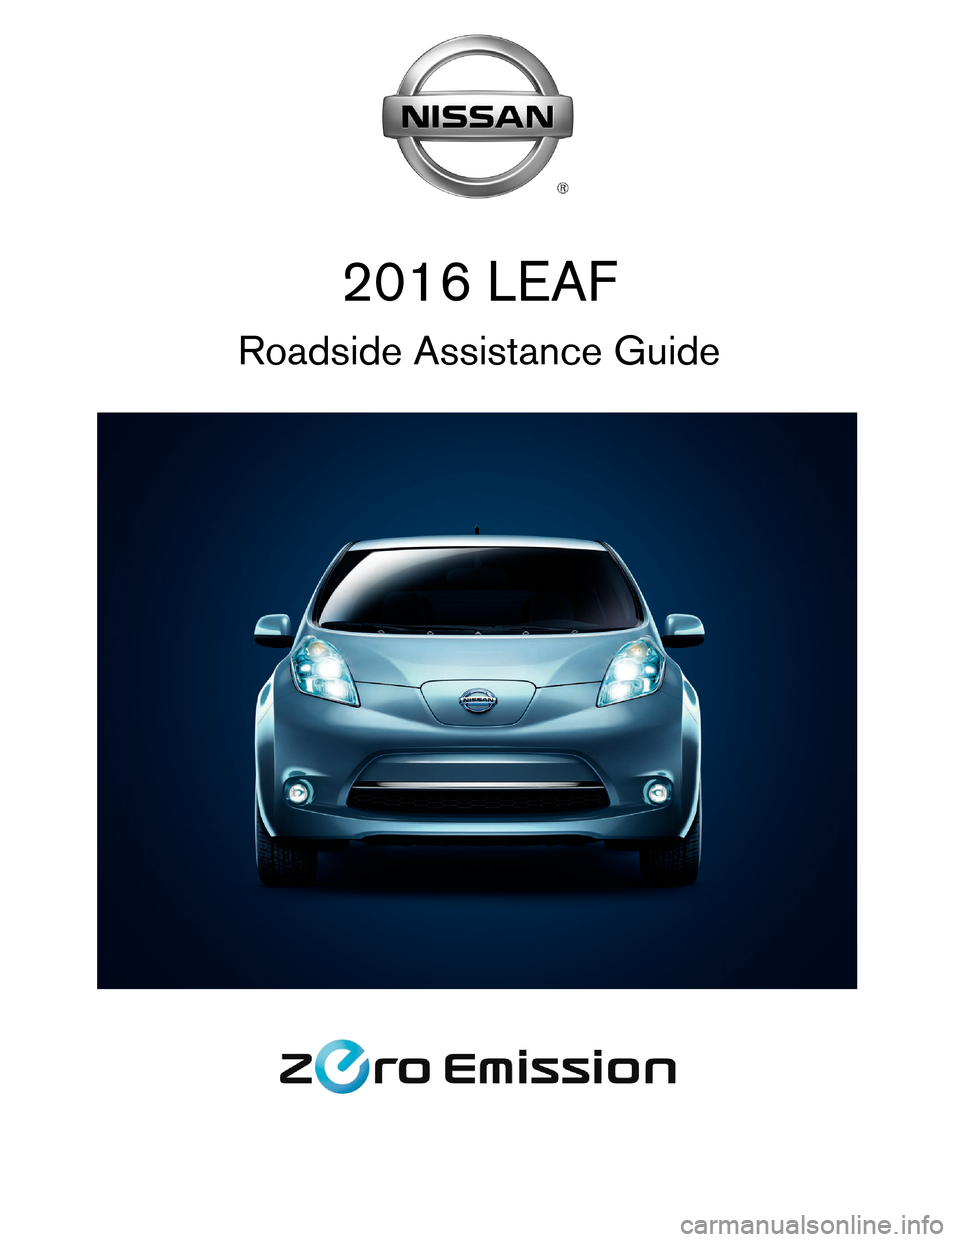 NISSAN LEAF 2016 1.G Roadside Assistance Guide 2016 LEAF
Roadside Assistance Guide    